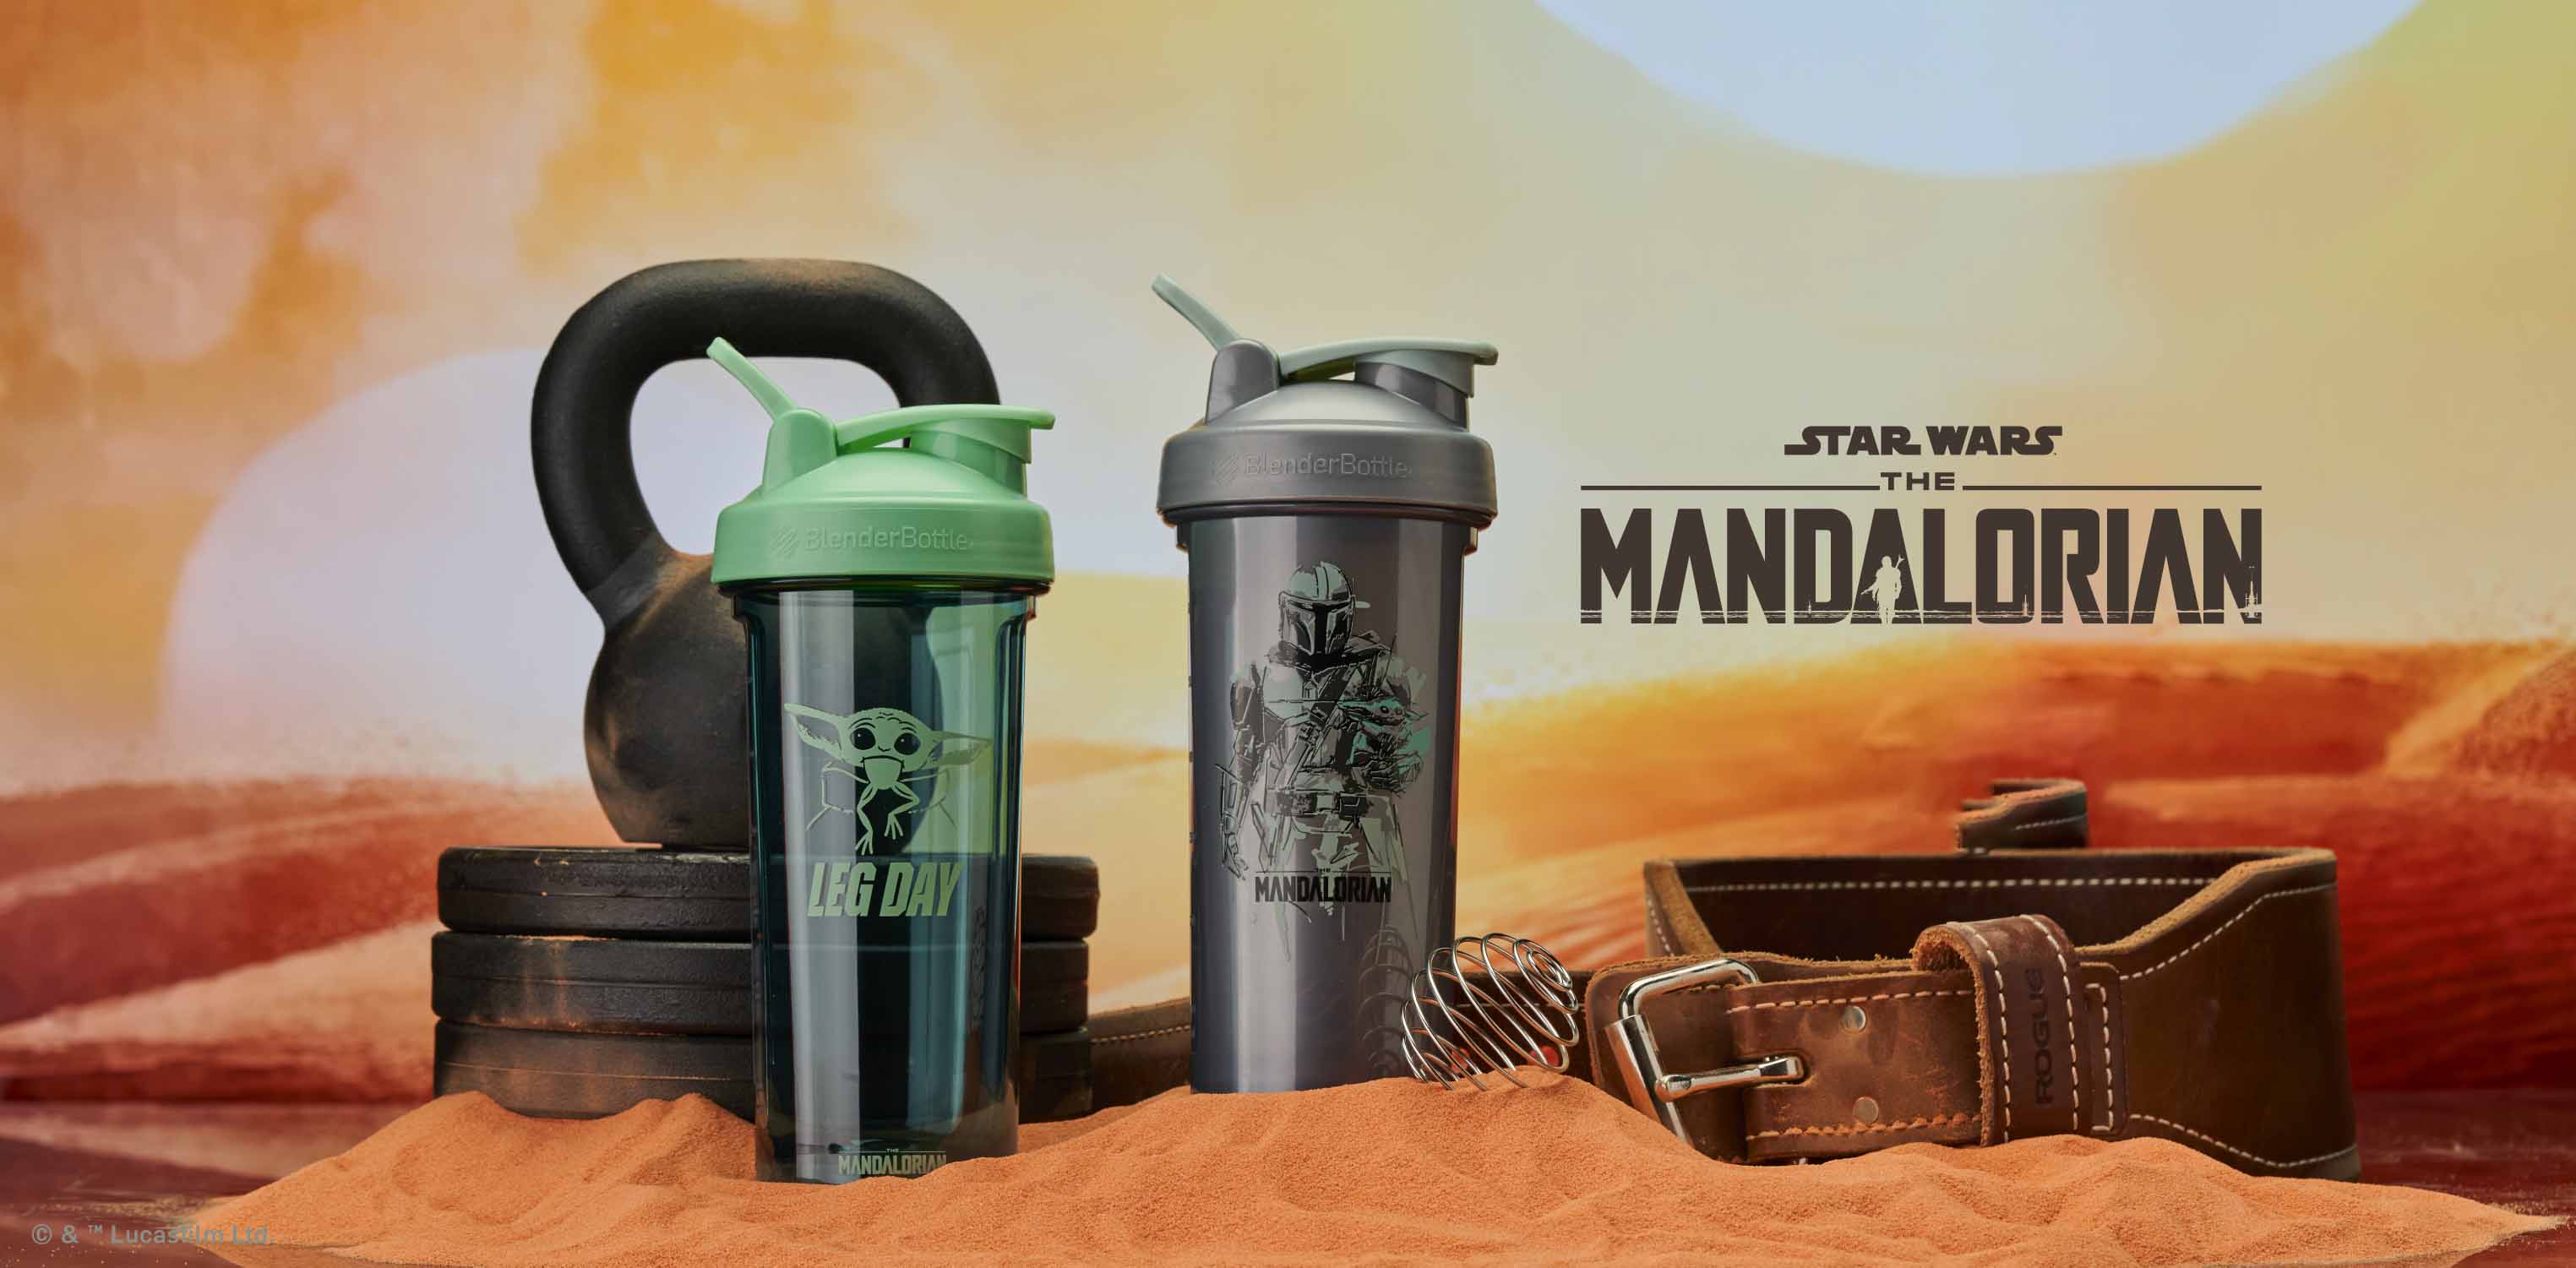 The Mandalorian Protein Shaker Bottles